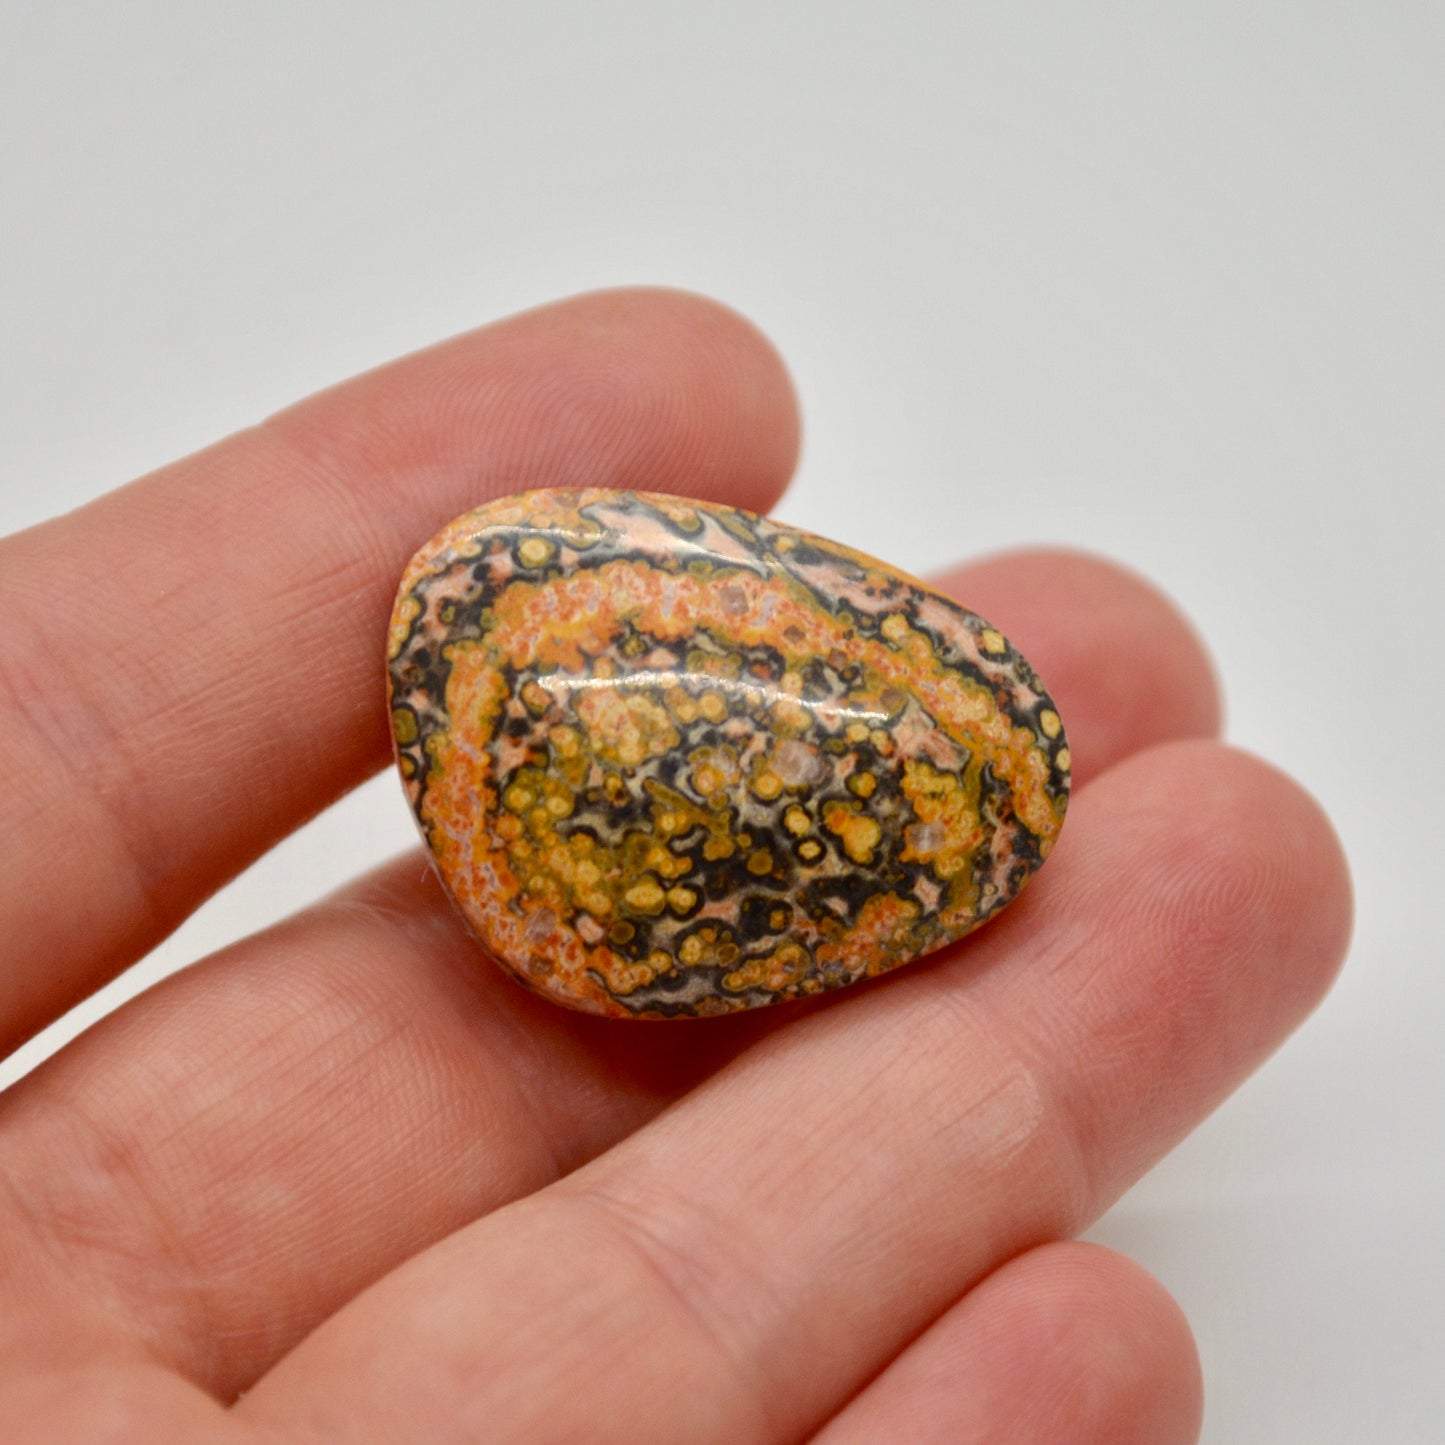 Leopard Skin Jasper Cabochon - 36.7 carats (22.6 mm x 30.5 mm)